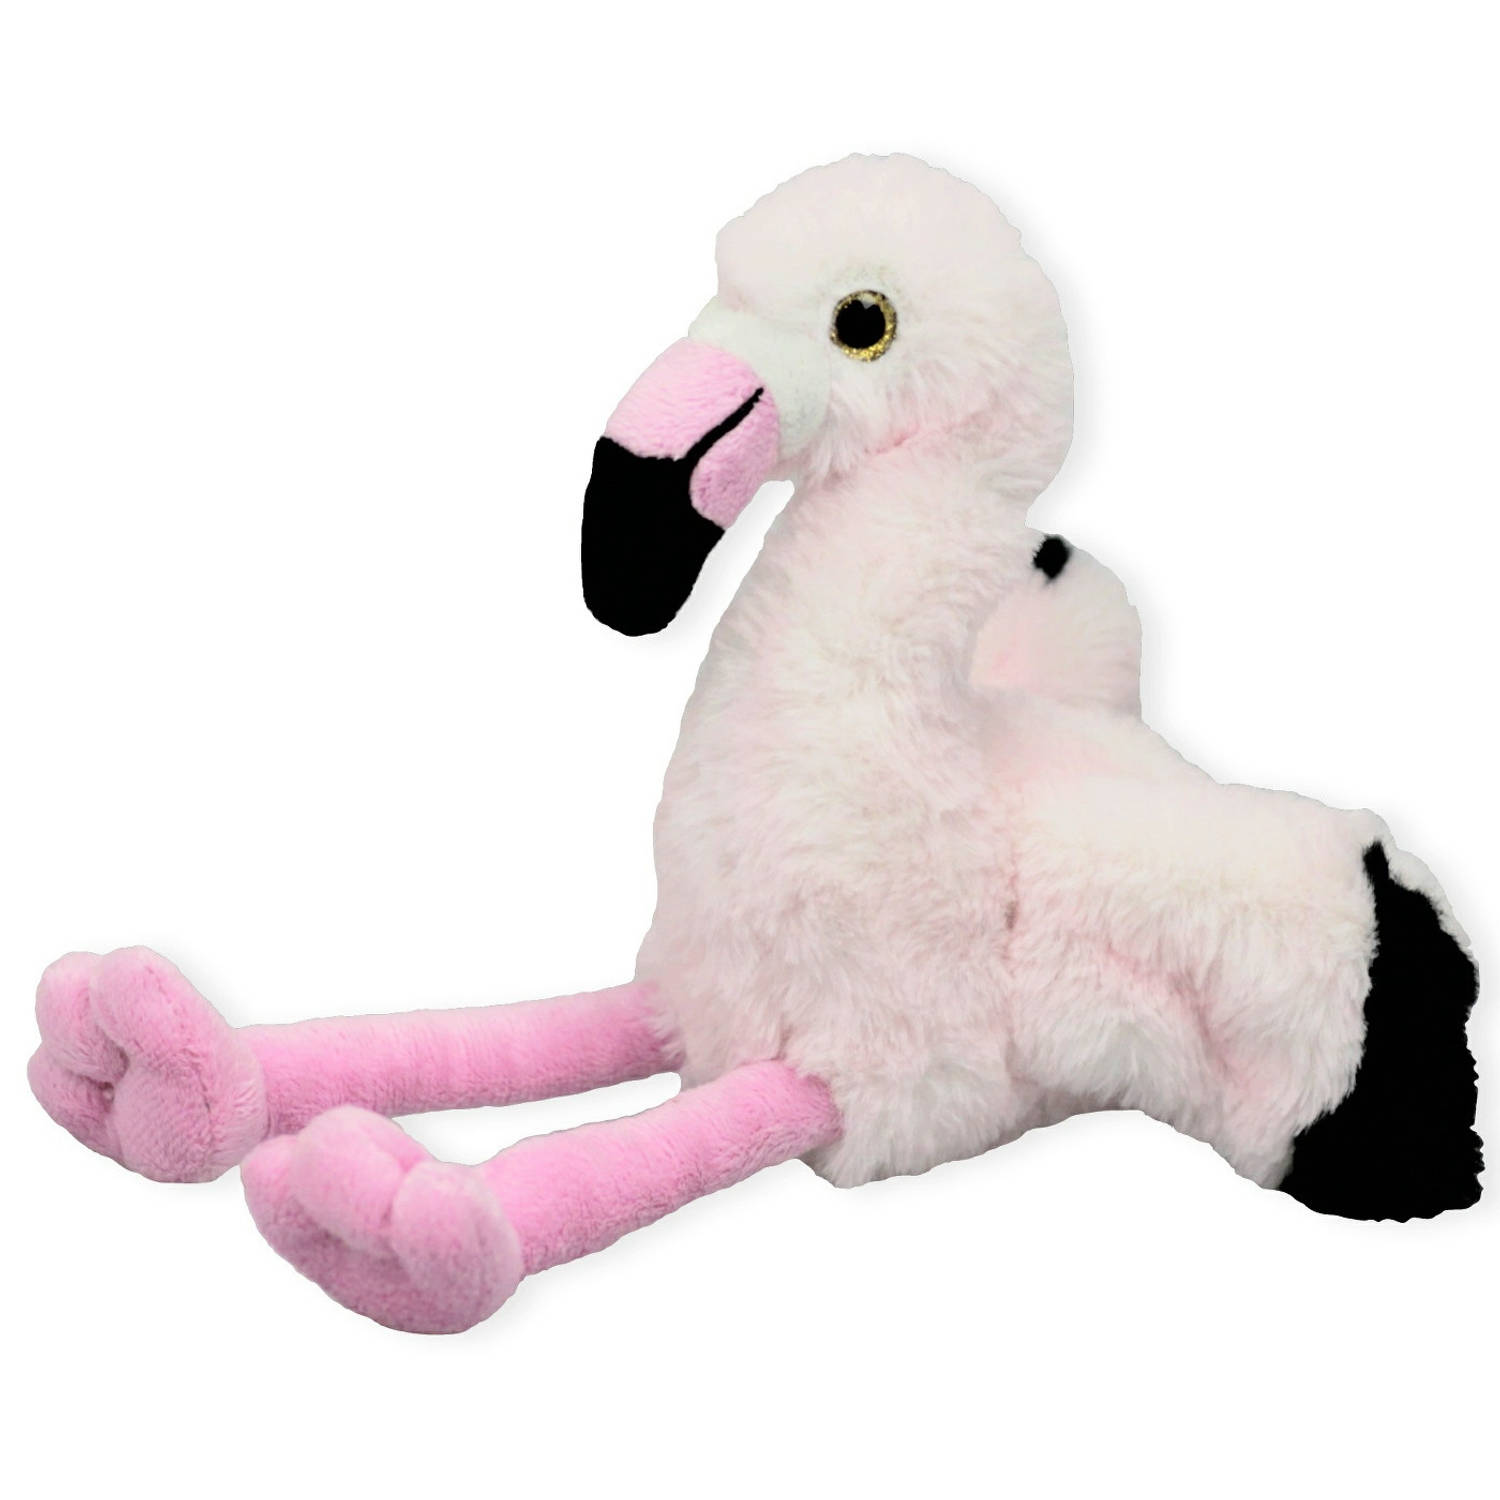 Inware pluche flamingo vogel knuffeldier - roze - zittend - 16 cm - Dieren/vogels knuffels